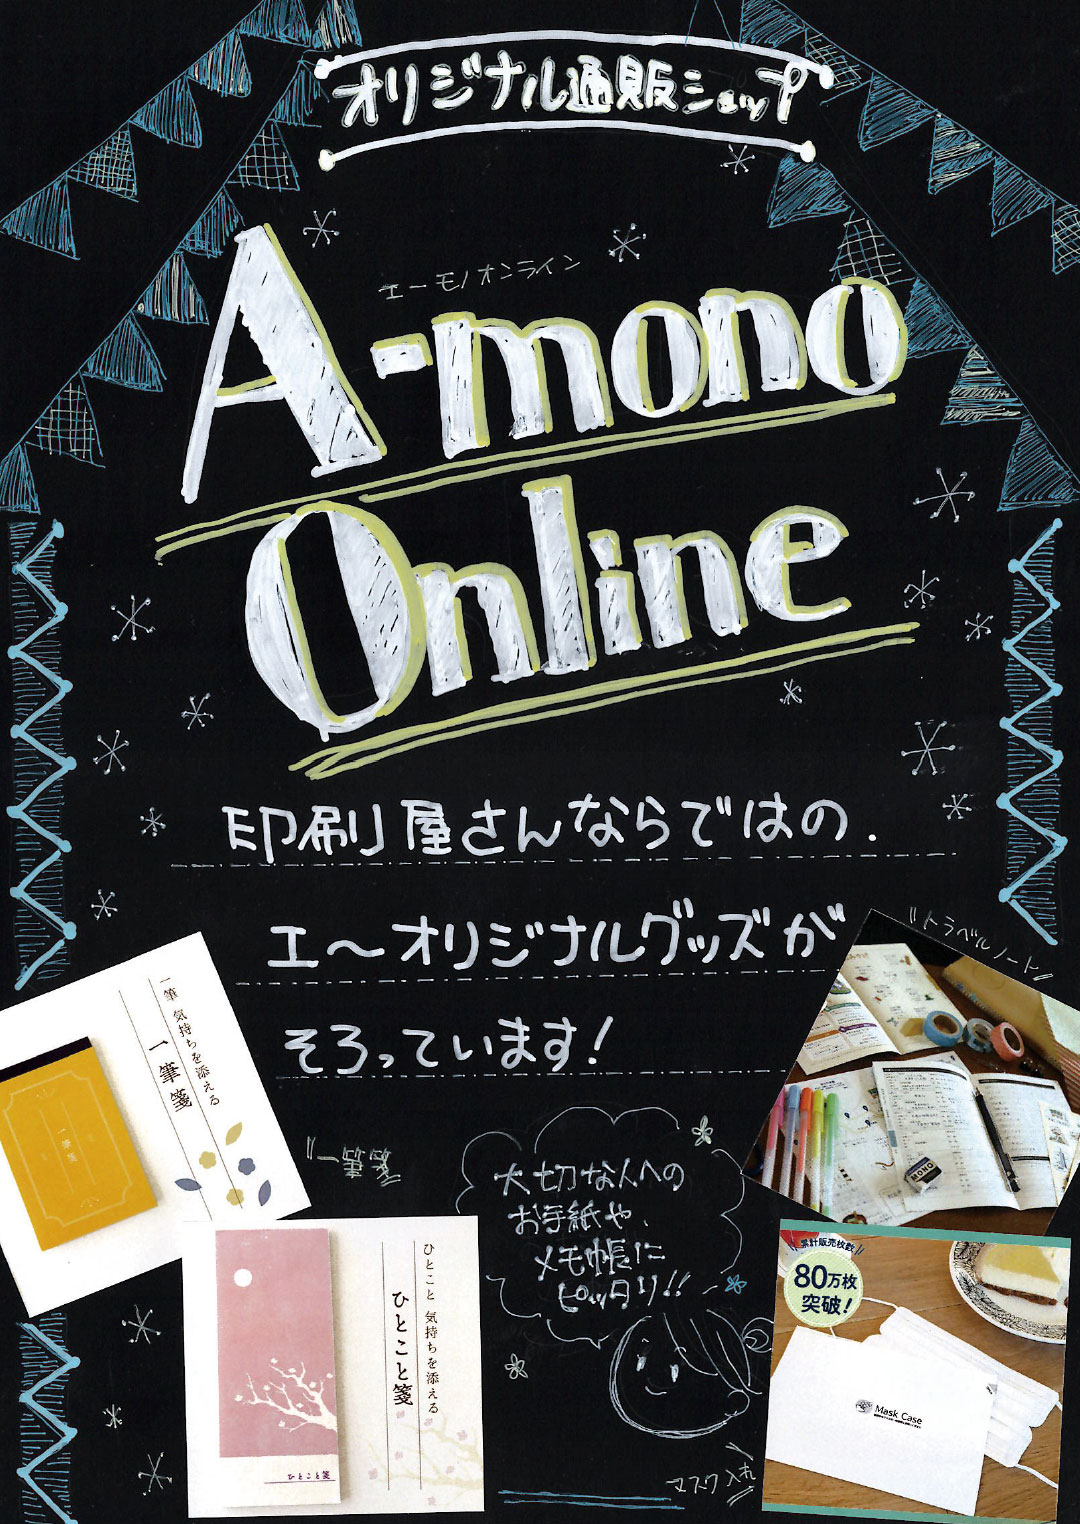 A-mono Online